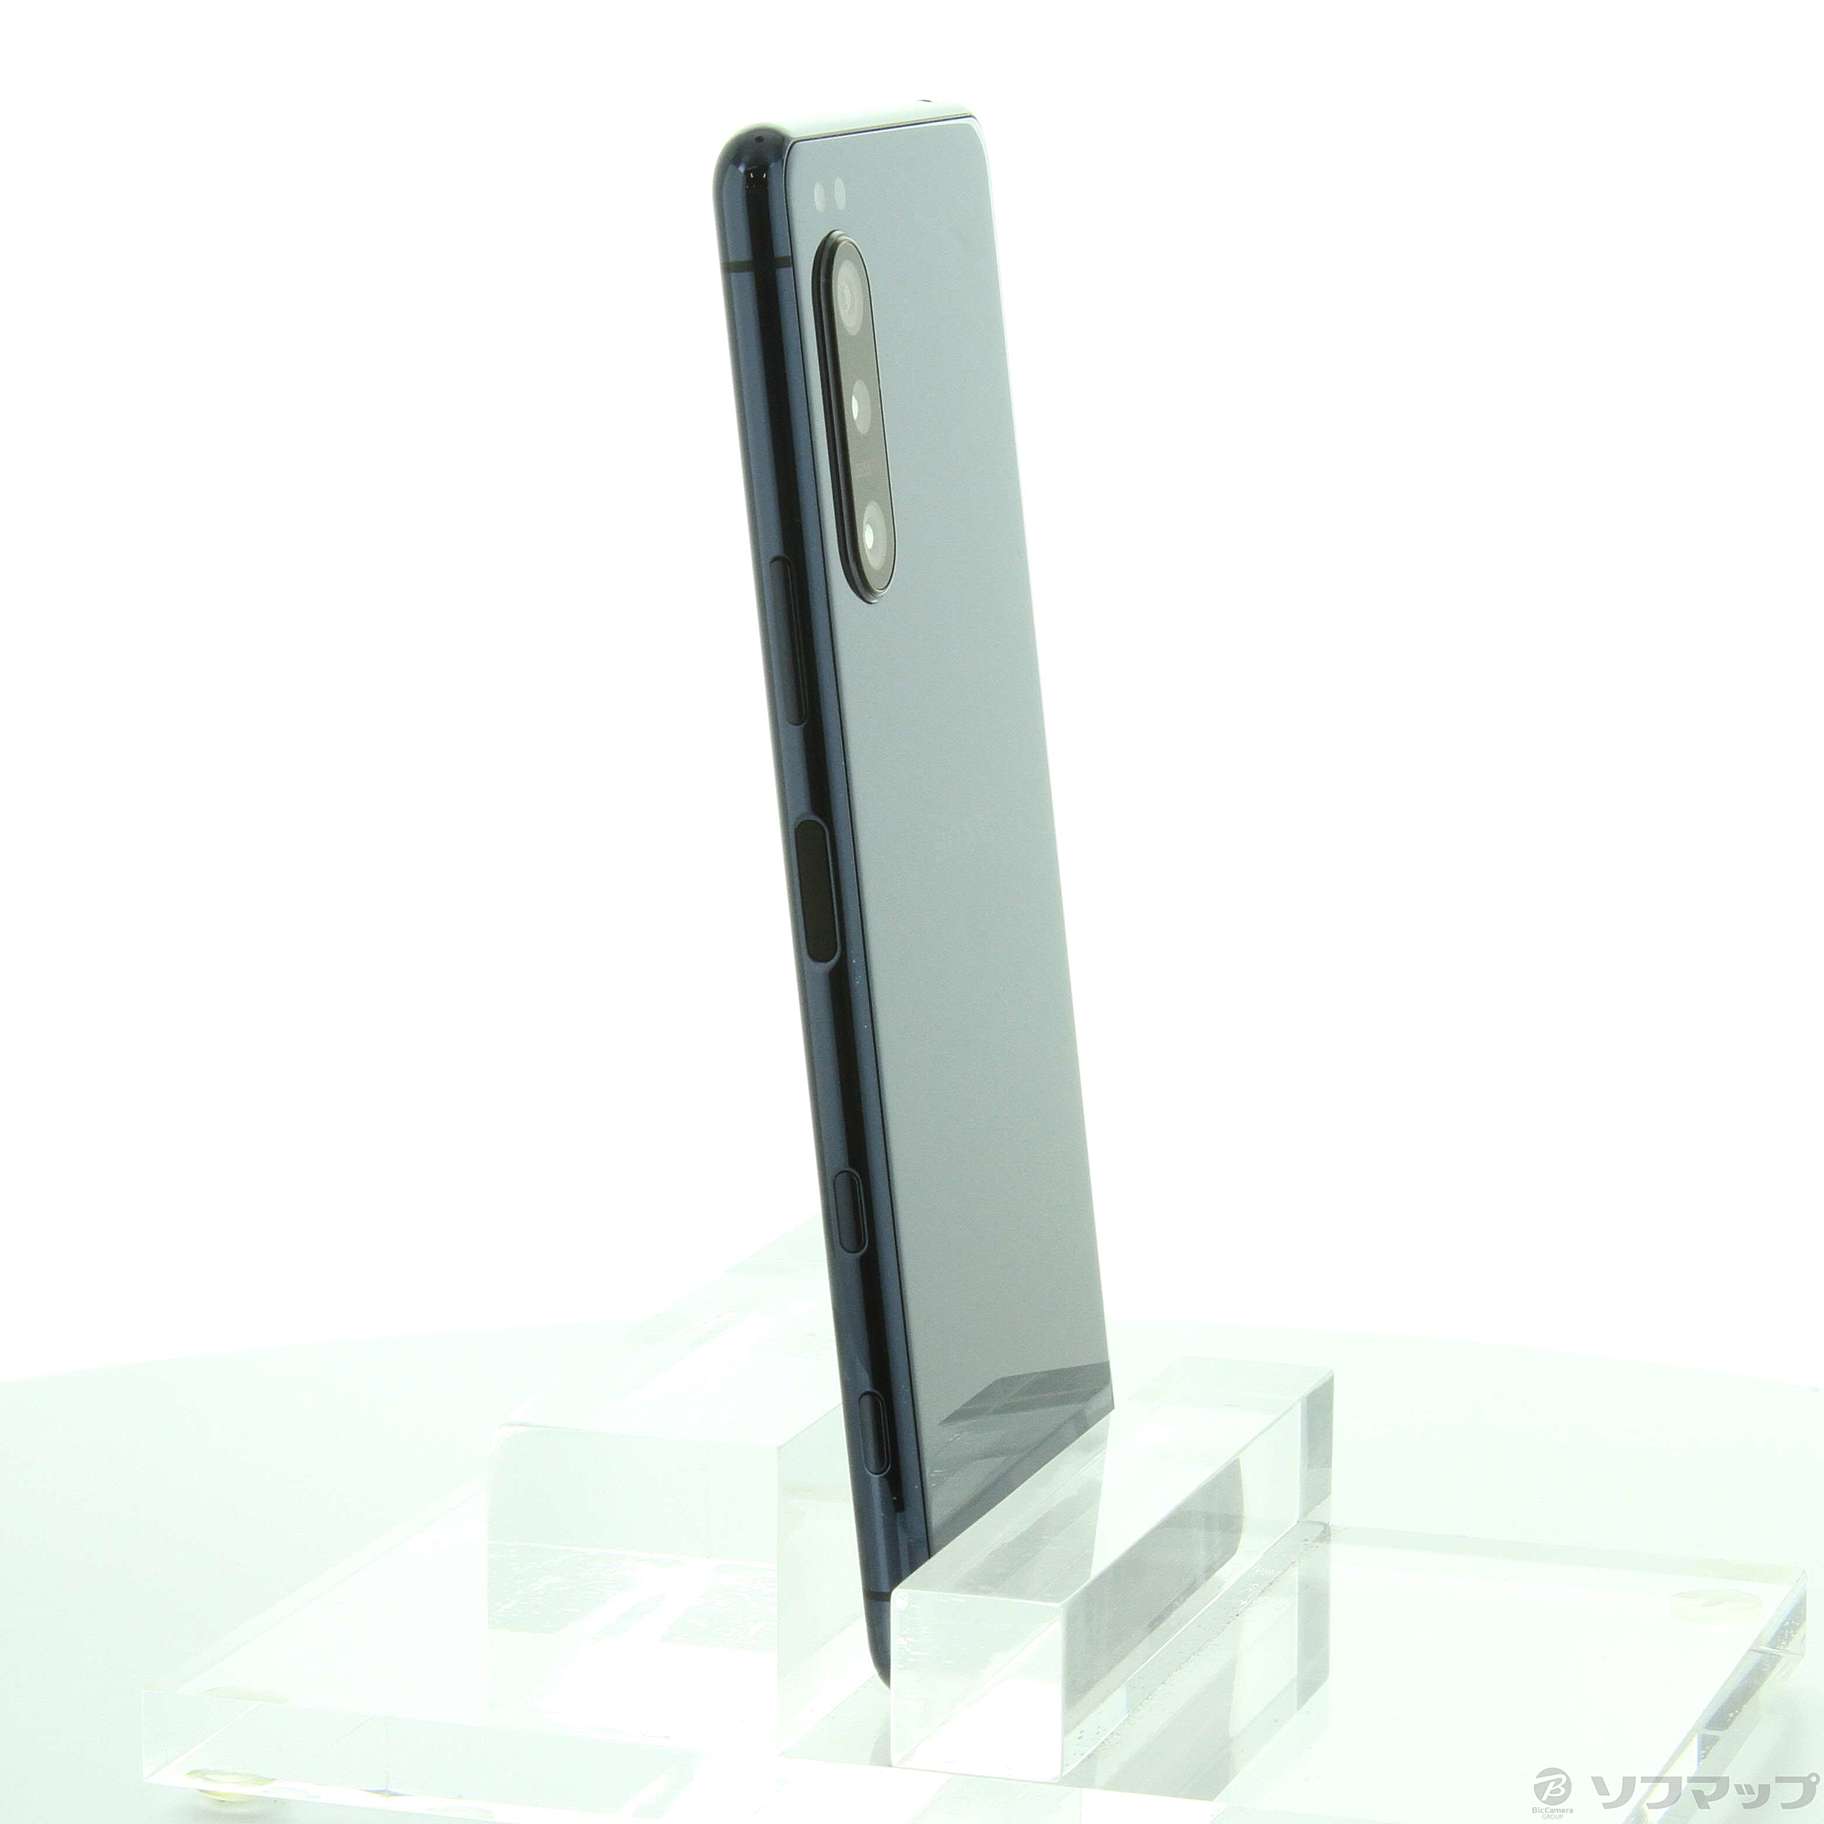 SIMフリー】Xperia 5 II ブルー 128GB au版 SOG02 - スマートフォン本体